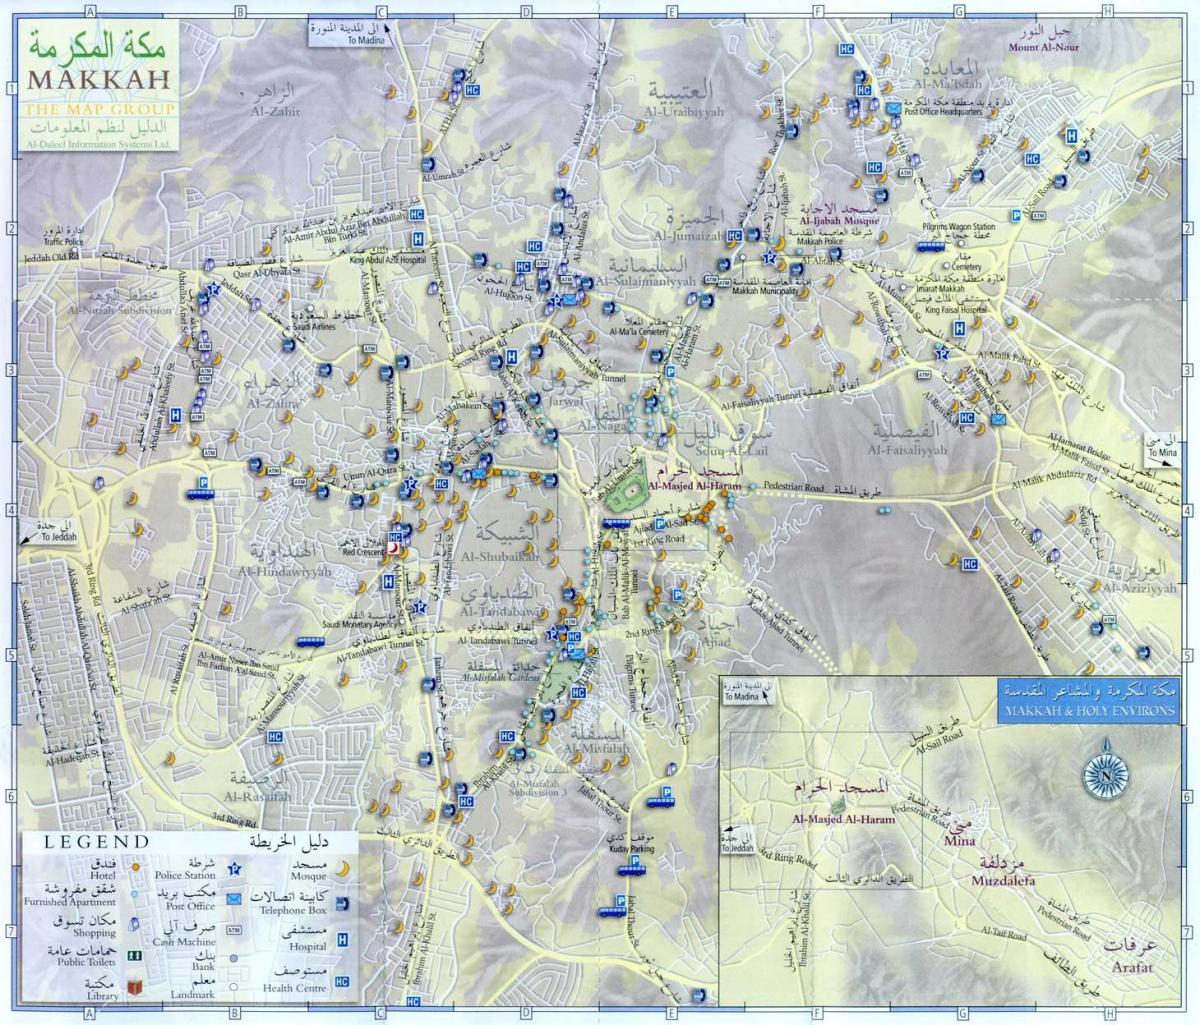  რუკა Makkah ziyarat ადგილებში